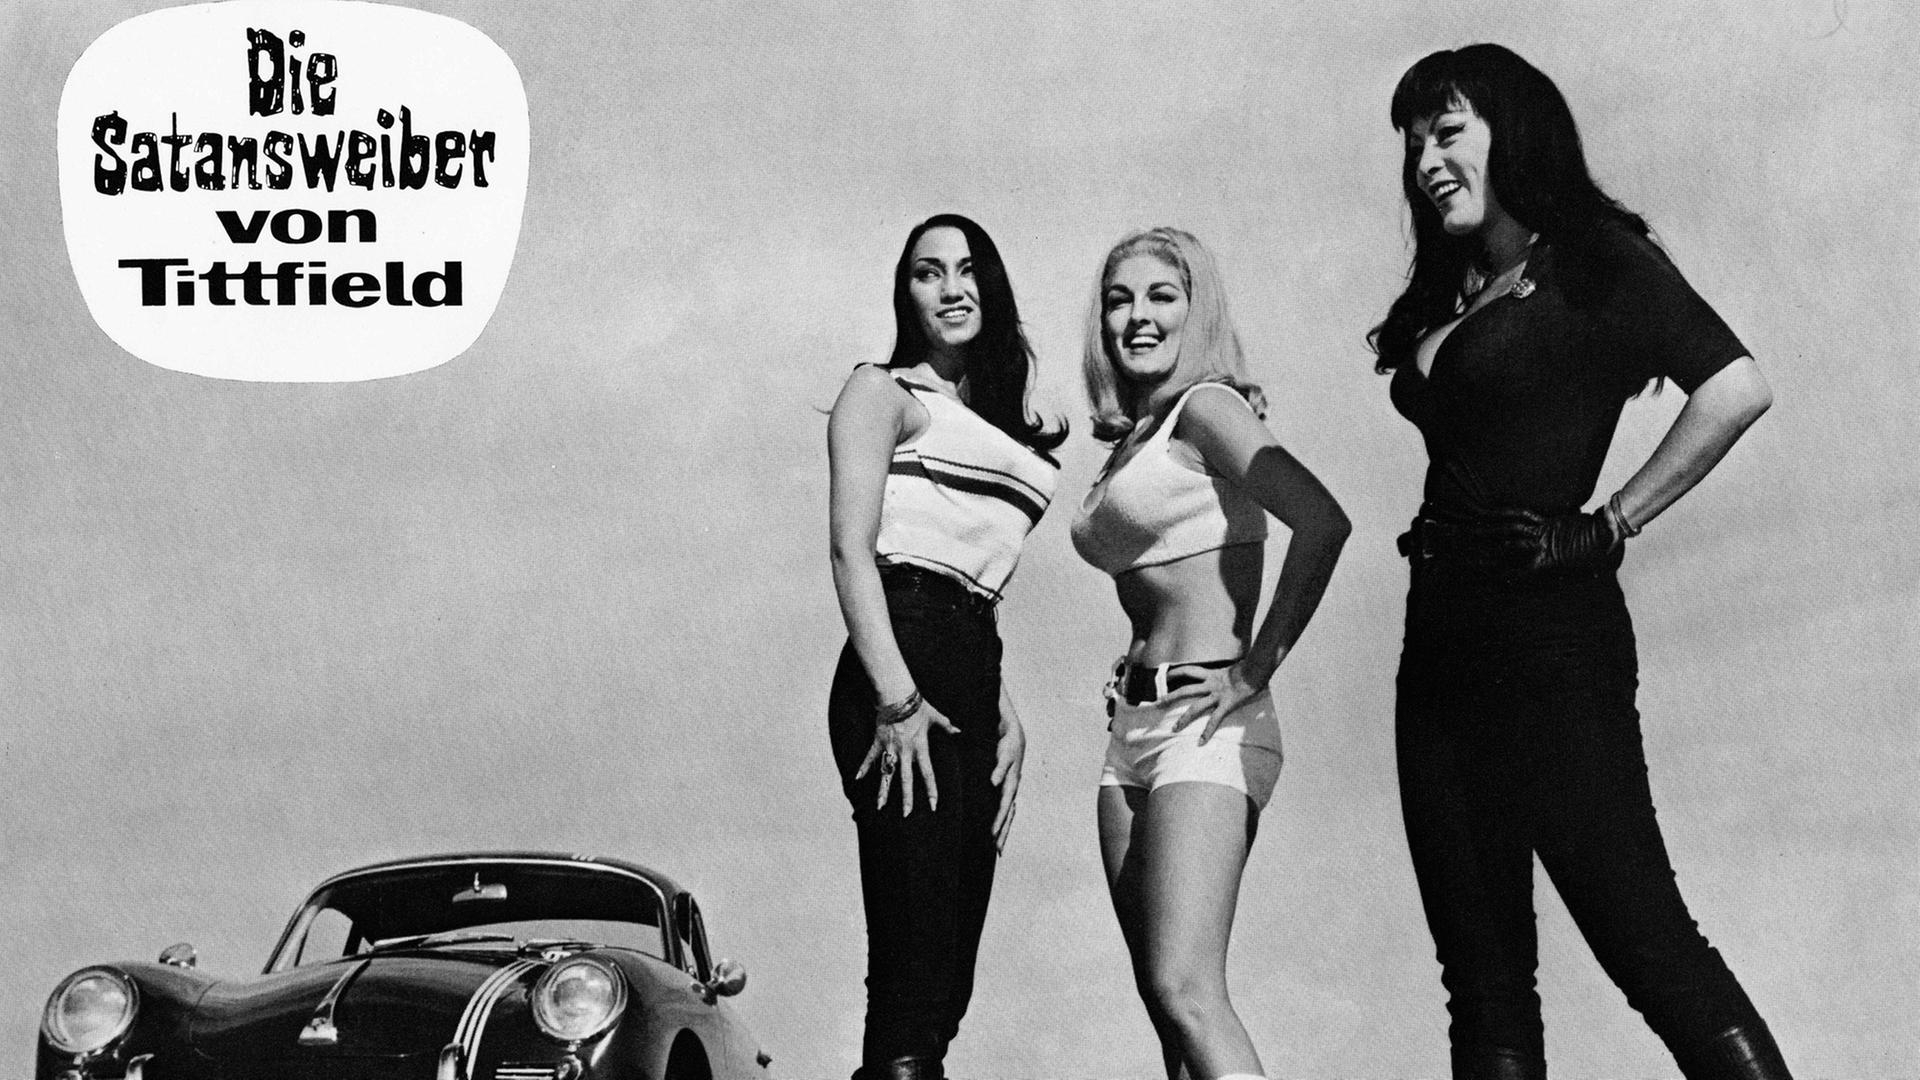 Die Schauspielerinnen Haji, Lori Williams und Tura Satana auf einem Filmplakat zu dem Film "Die Satansweiber von Tittfield" (Originaltitel: "Faster, Pussycat! Kill! Kill!") von Russ Meyer aus dem Jahr 1965